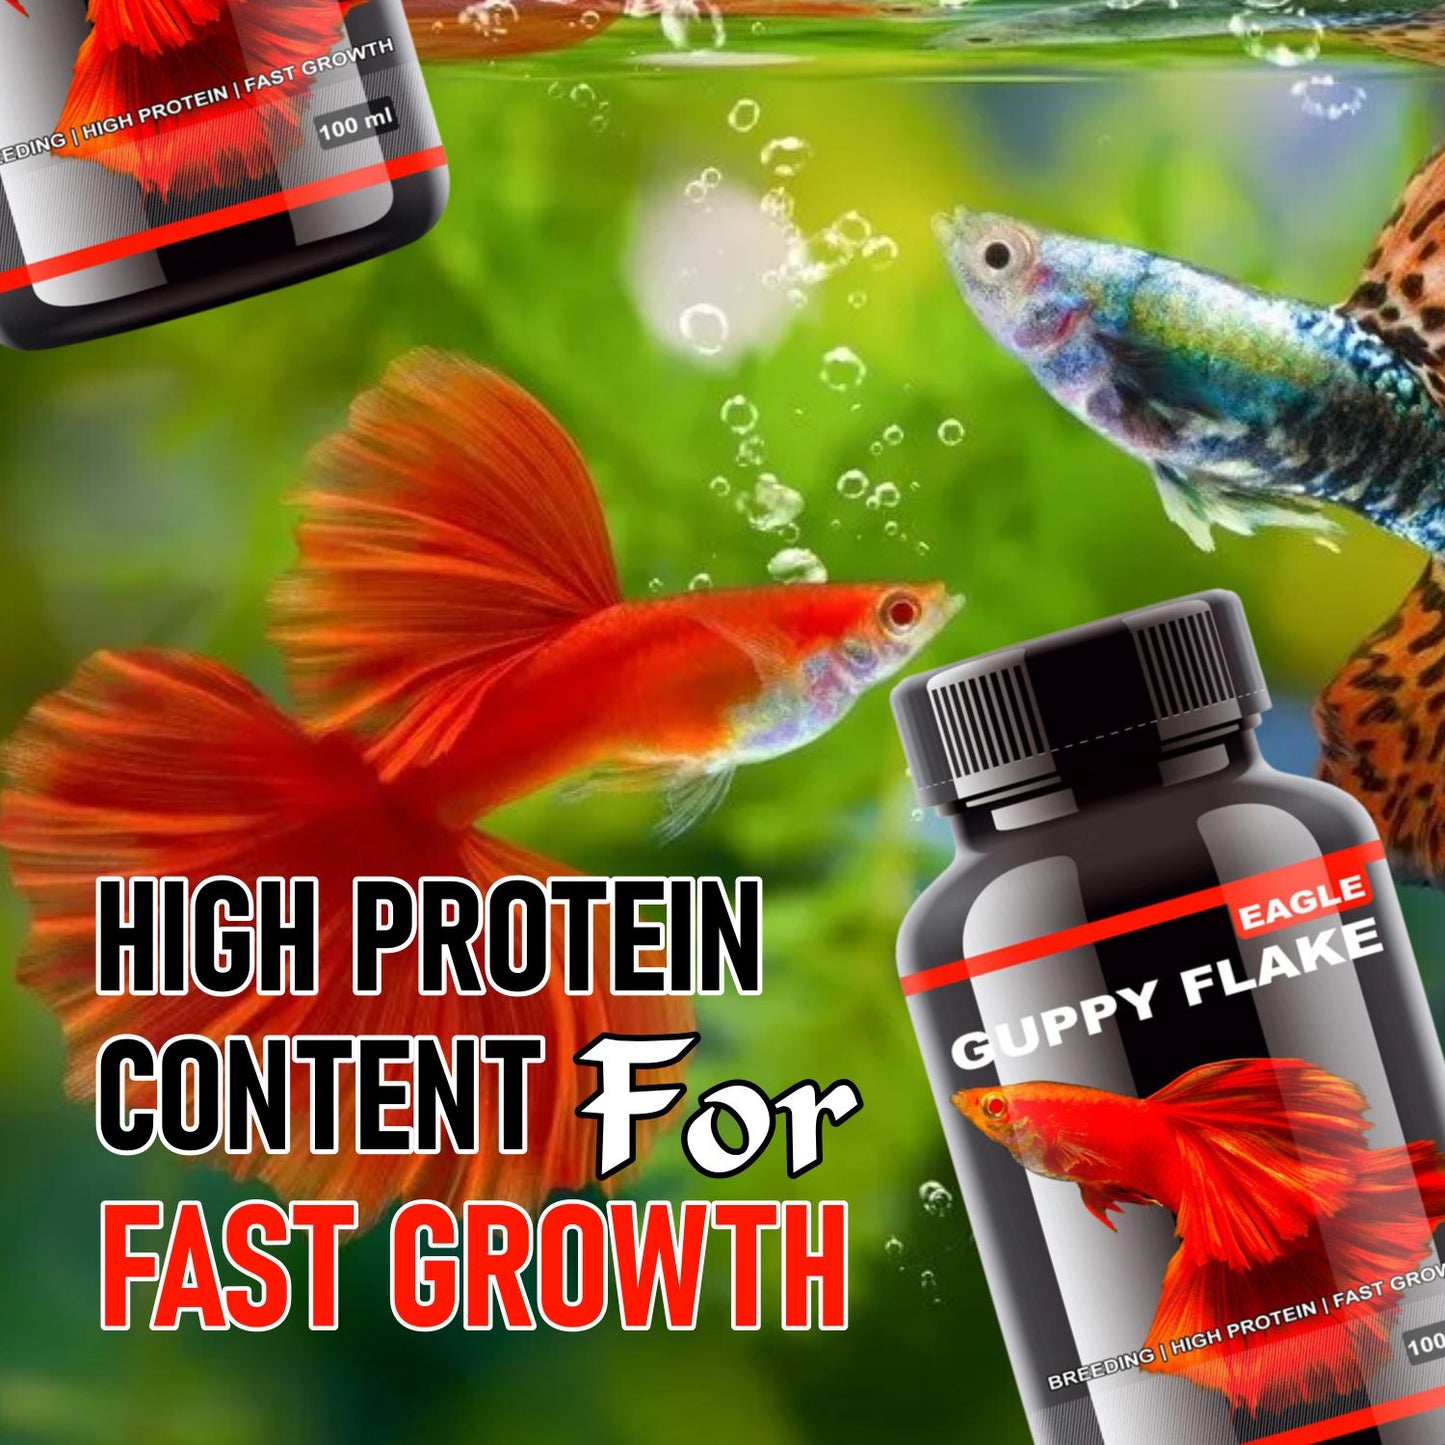 Eagle Guppy Flakes, 100ML | Breeding | High Protein | Fast Growth